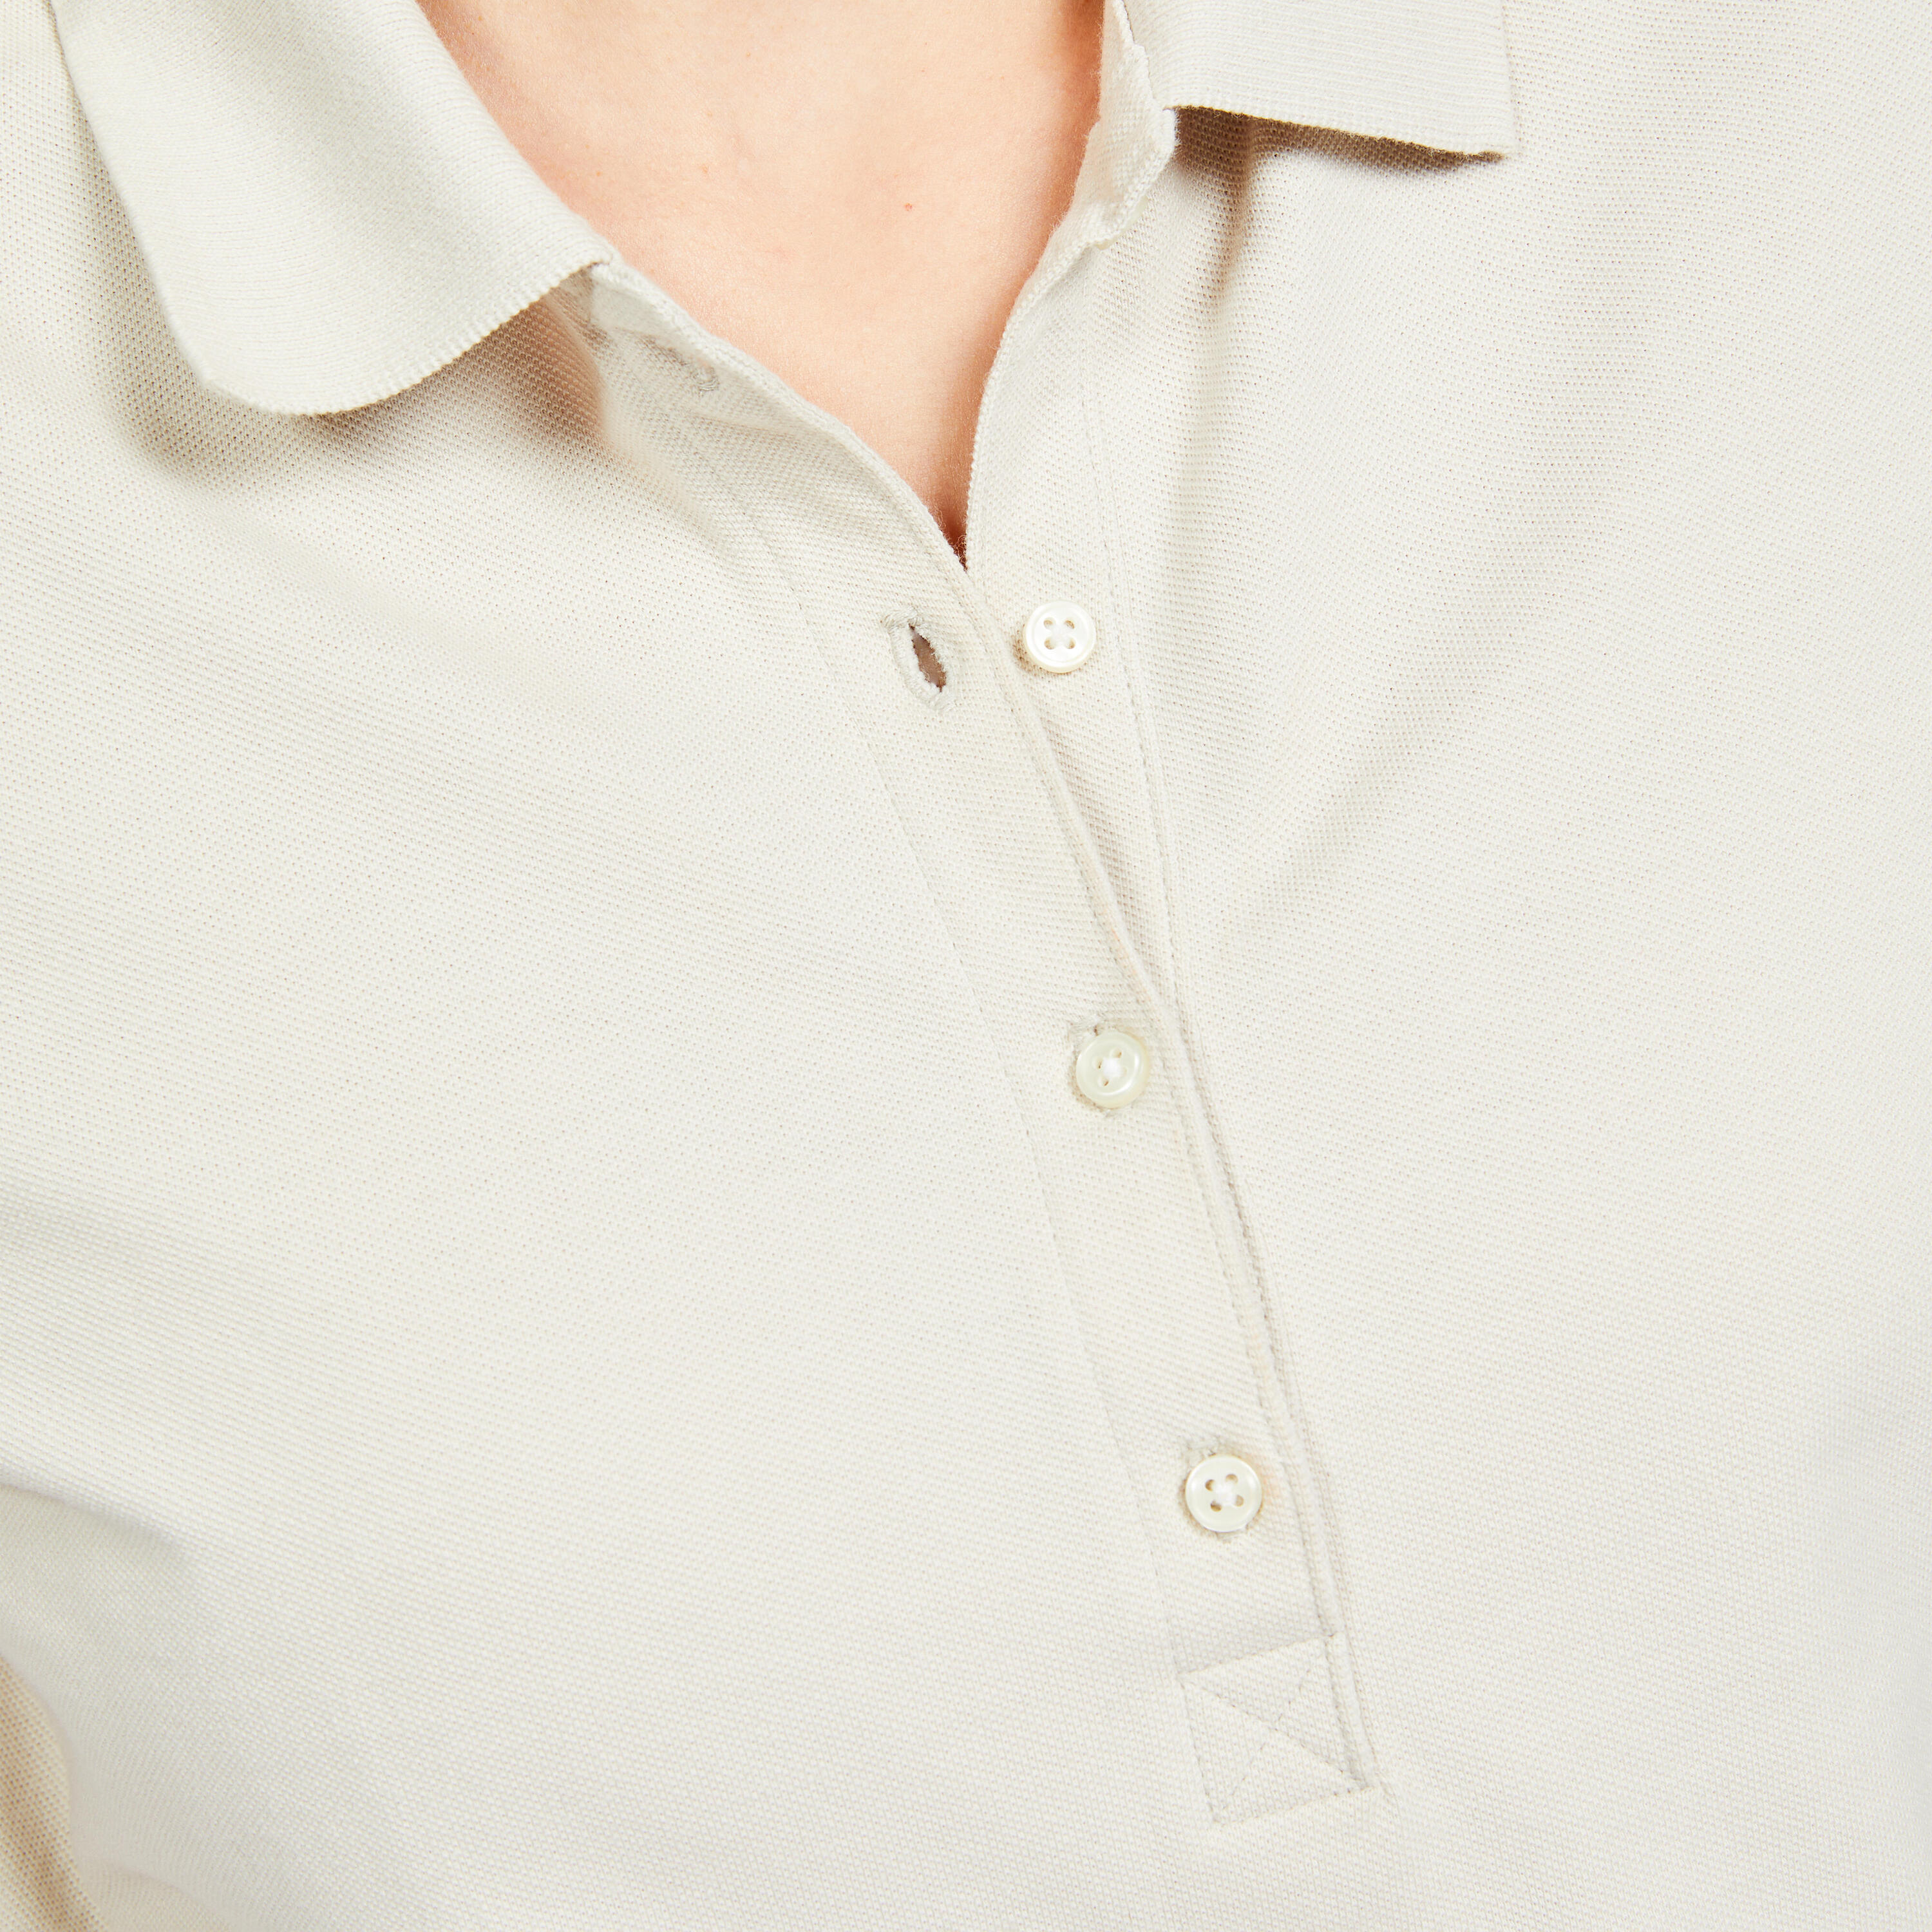 Women's short-sleeved golf polo shirt - MW500 light beige 5/6